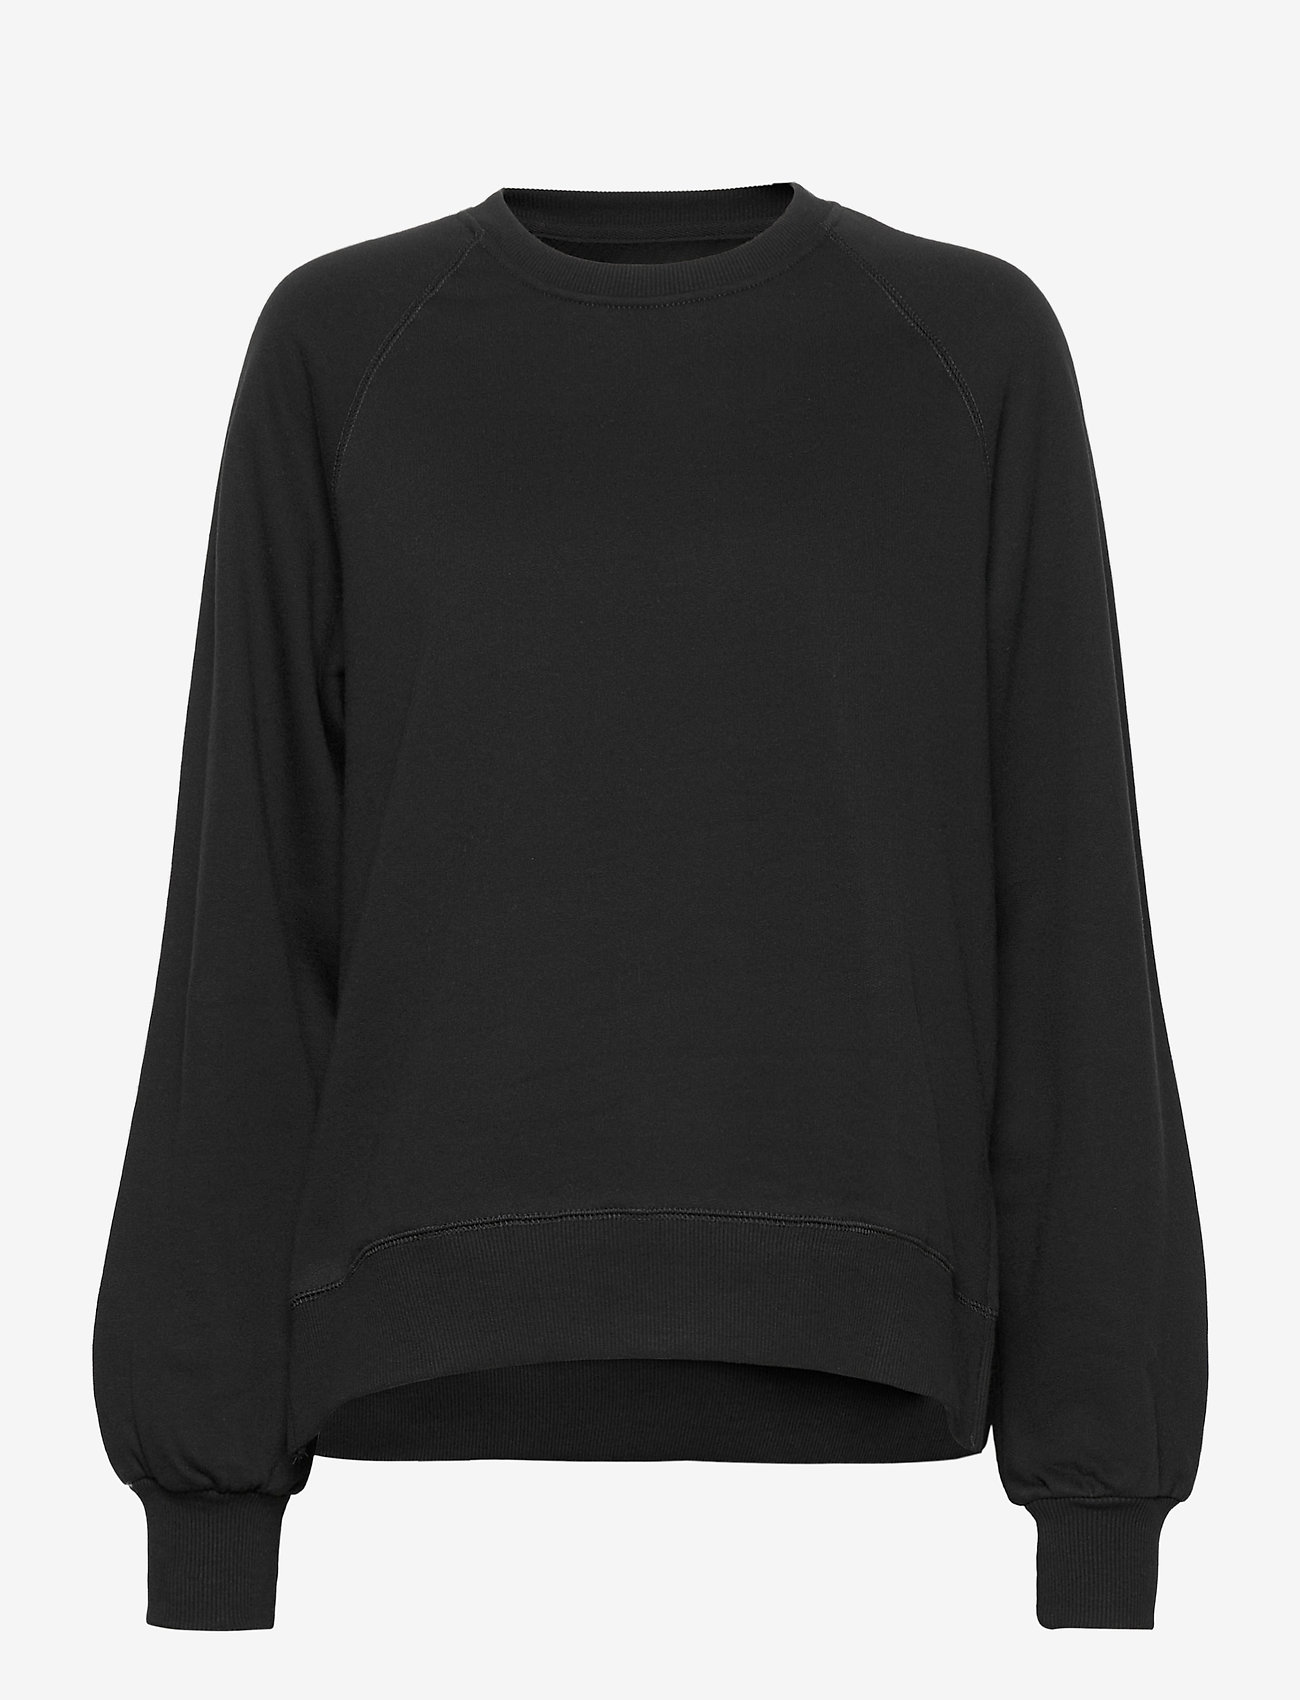 Makia - Etta Sweatshirt - sporta džemperi - black - 0